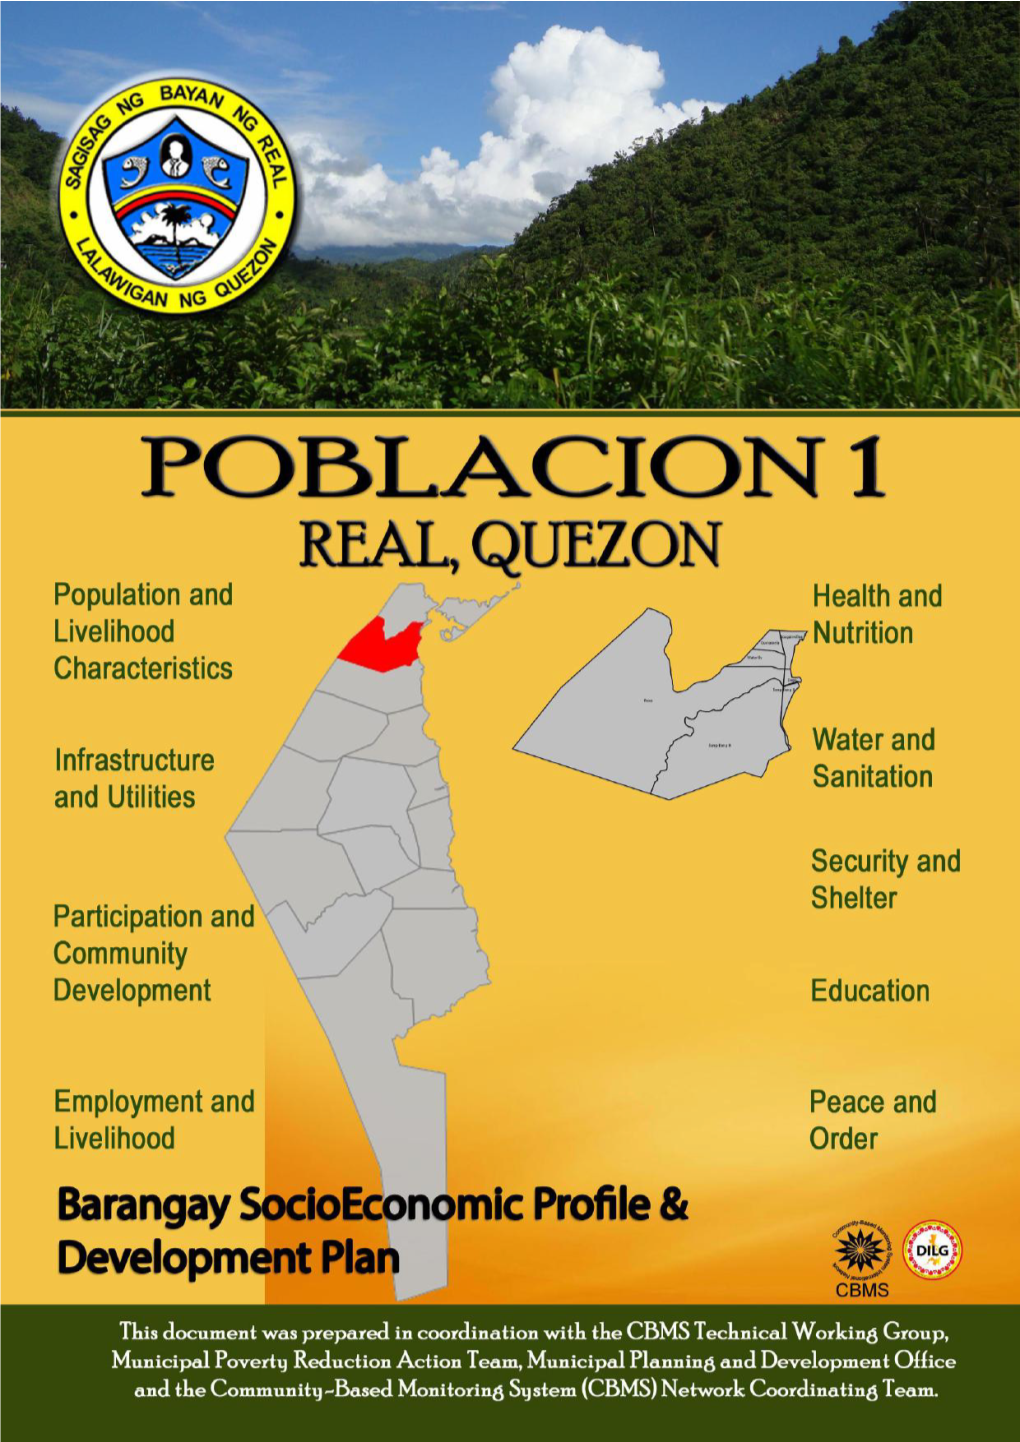 POBLACION 1 Barangay Socioeconomic Profile & Development Plan